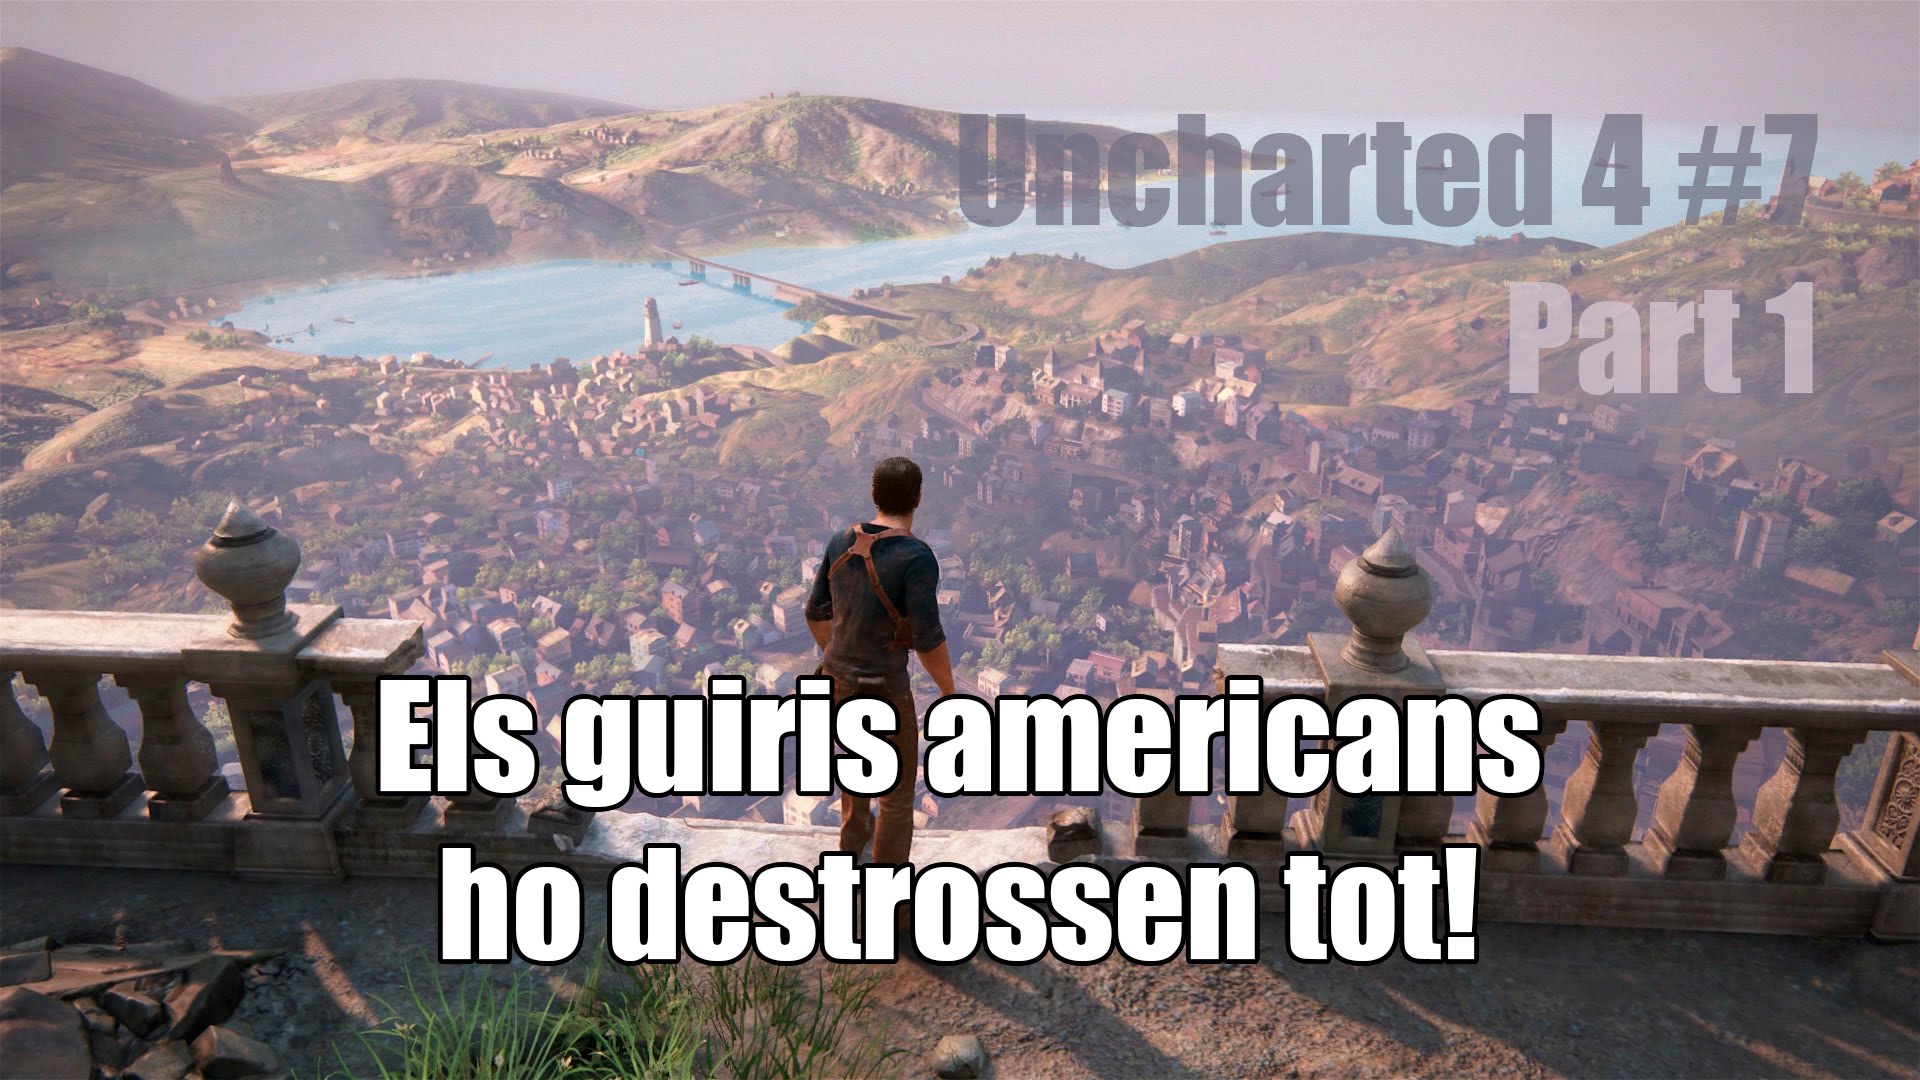 Els guiris americans ho destrossen tot! (Part 1) | UNCHARTED 4 #7 de Pepiu de Castellar